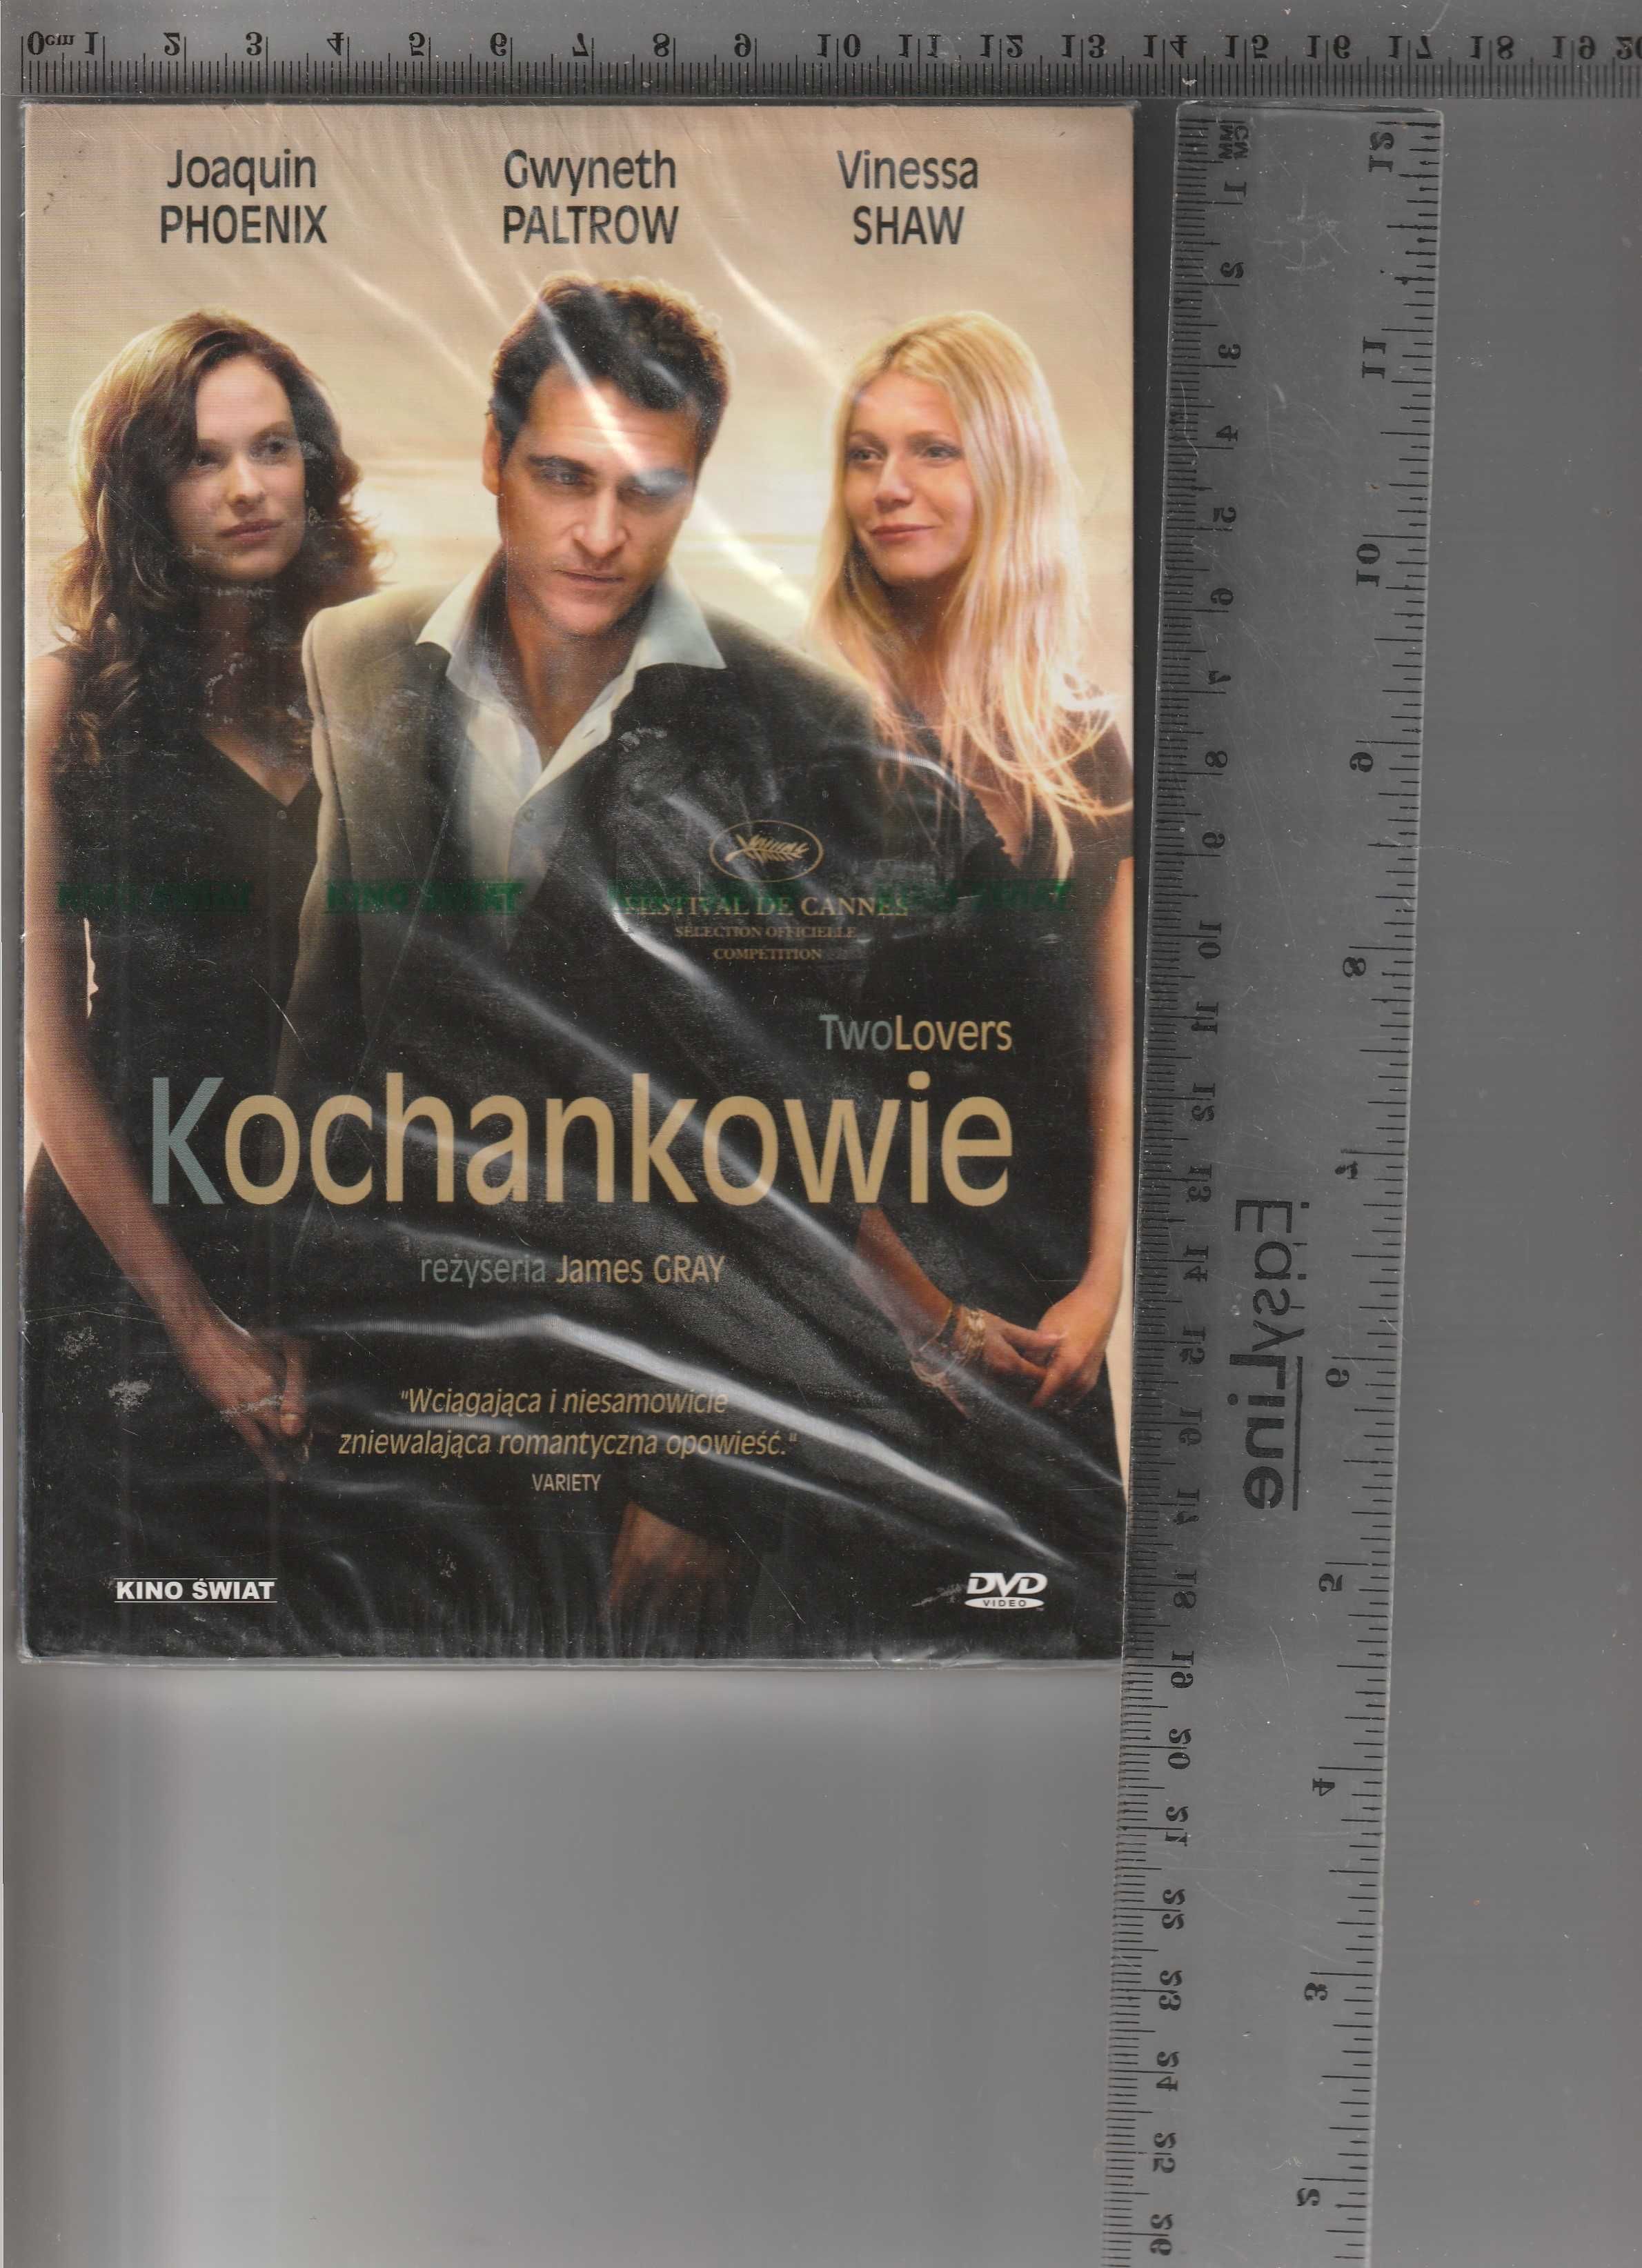 Kochankowie Joaquin Phoenix,Gwyneth Paltrow  DVD